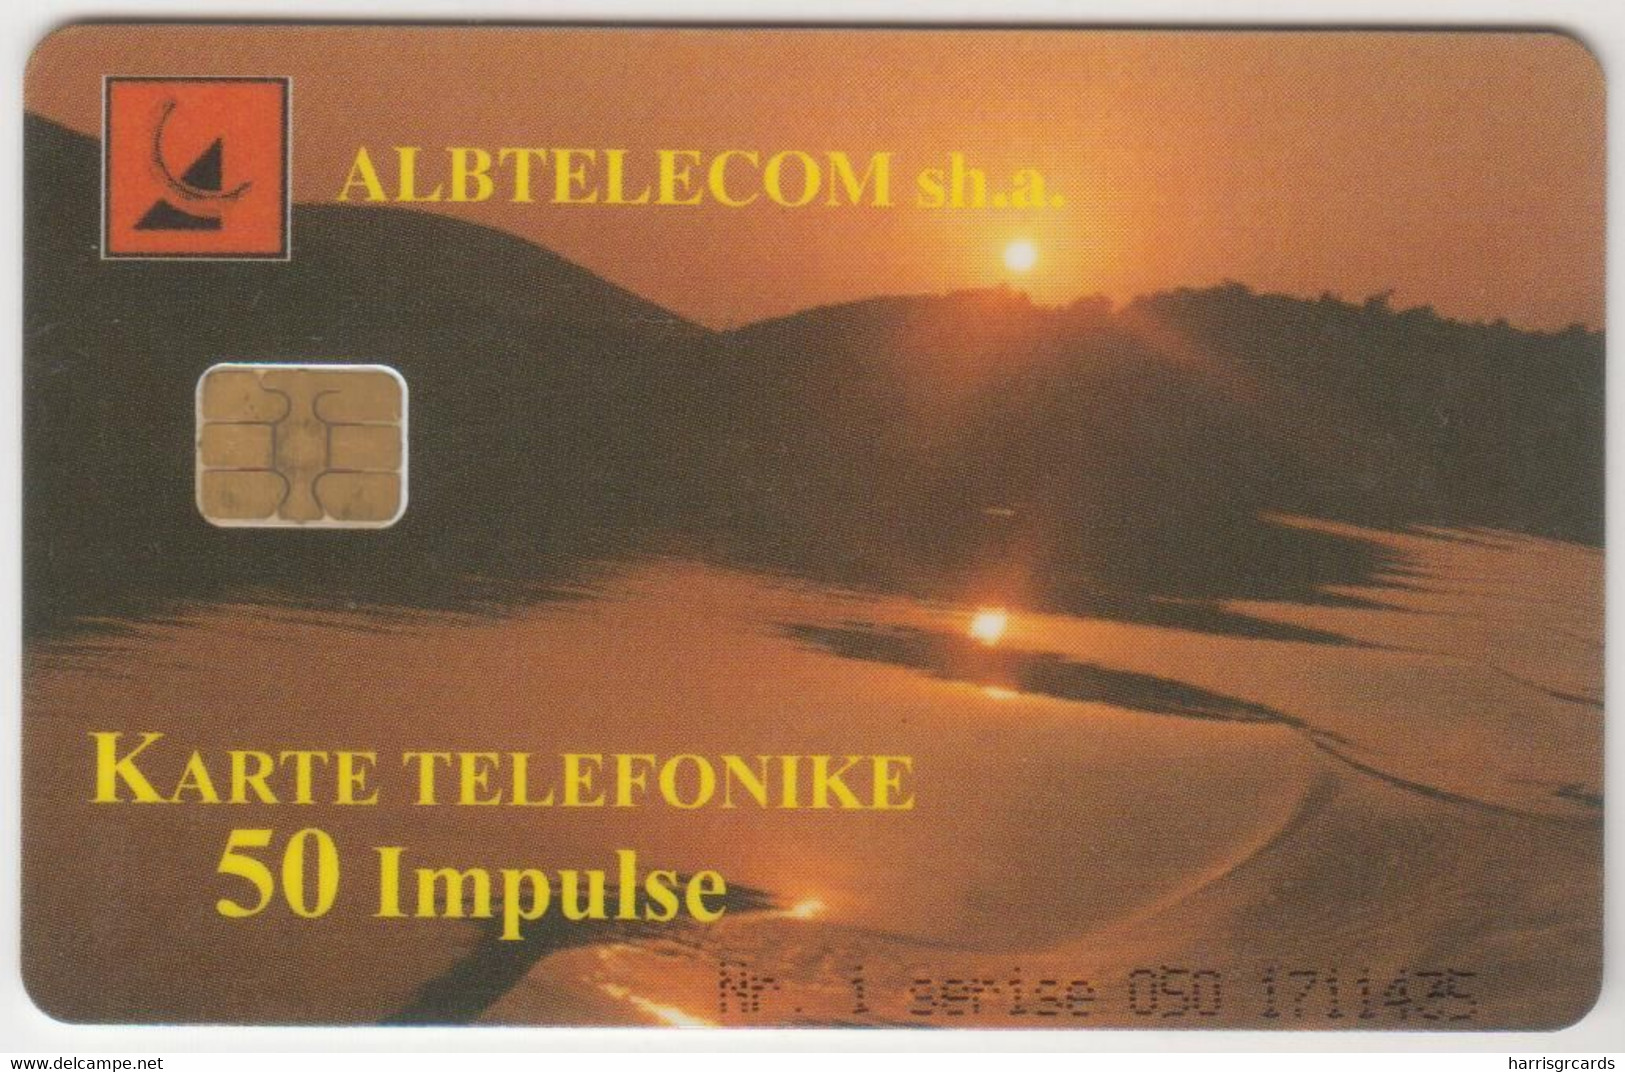 ALBANIA - Sunset ,05/99, 50 U, Tirage 180,000, Used - Albanien